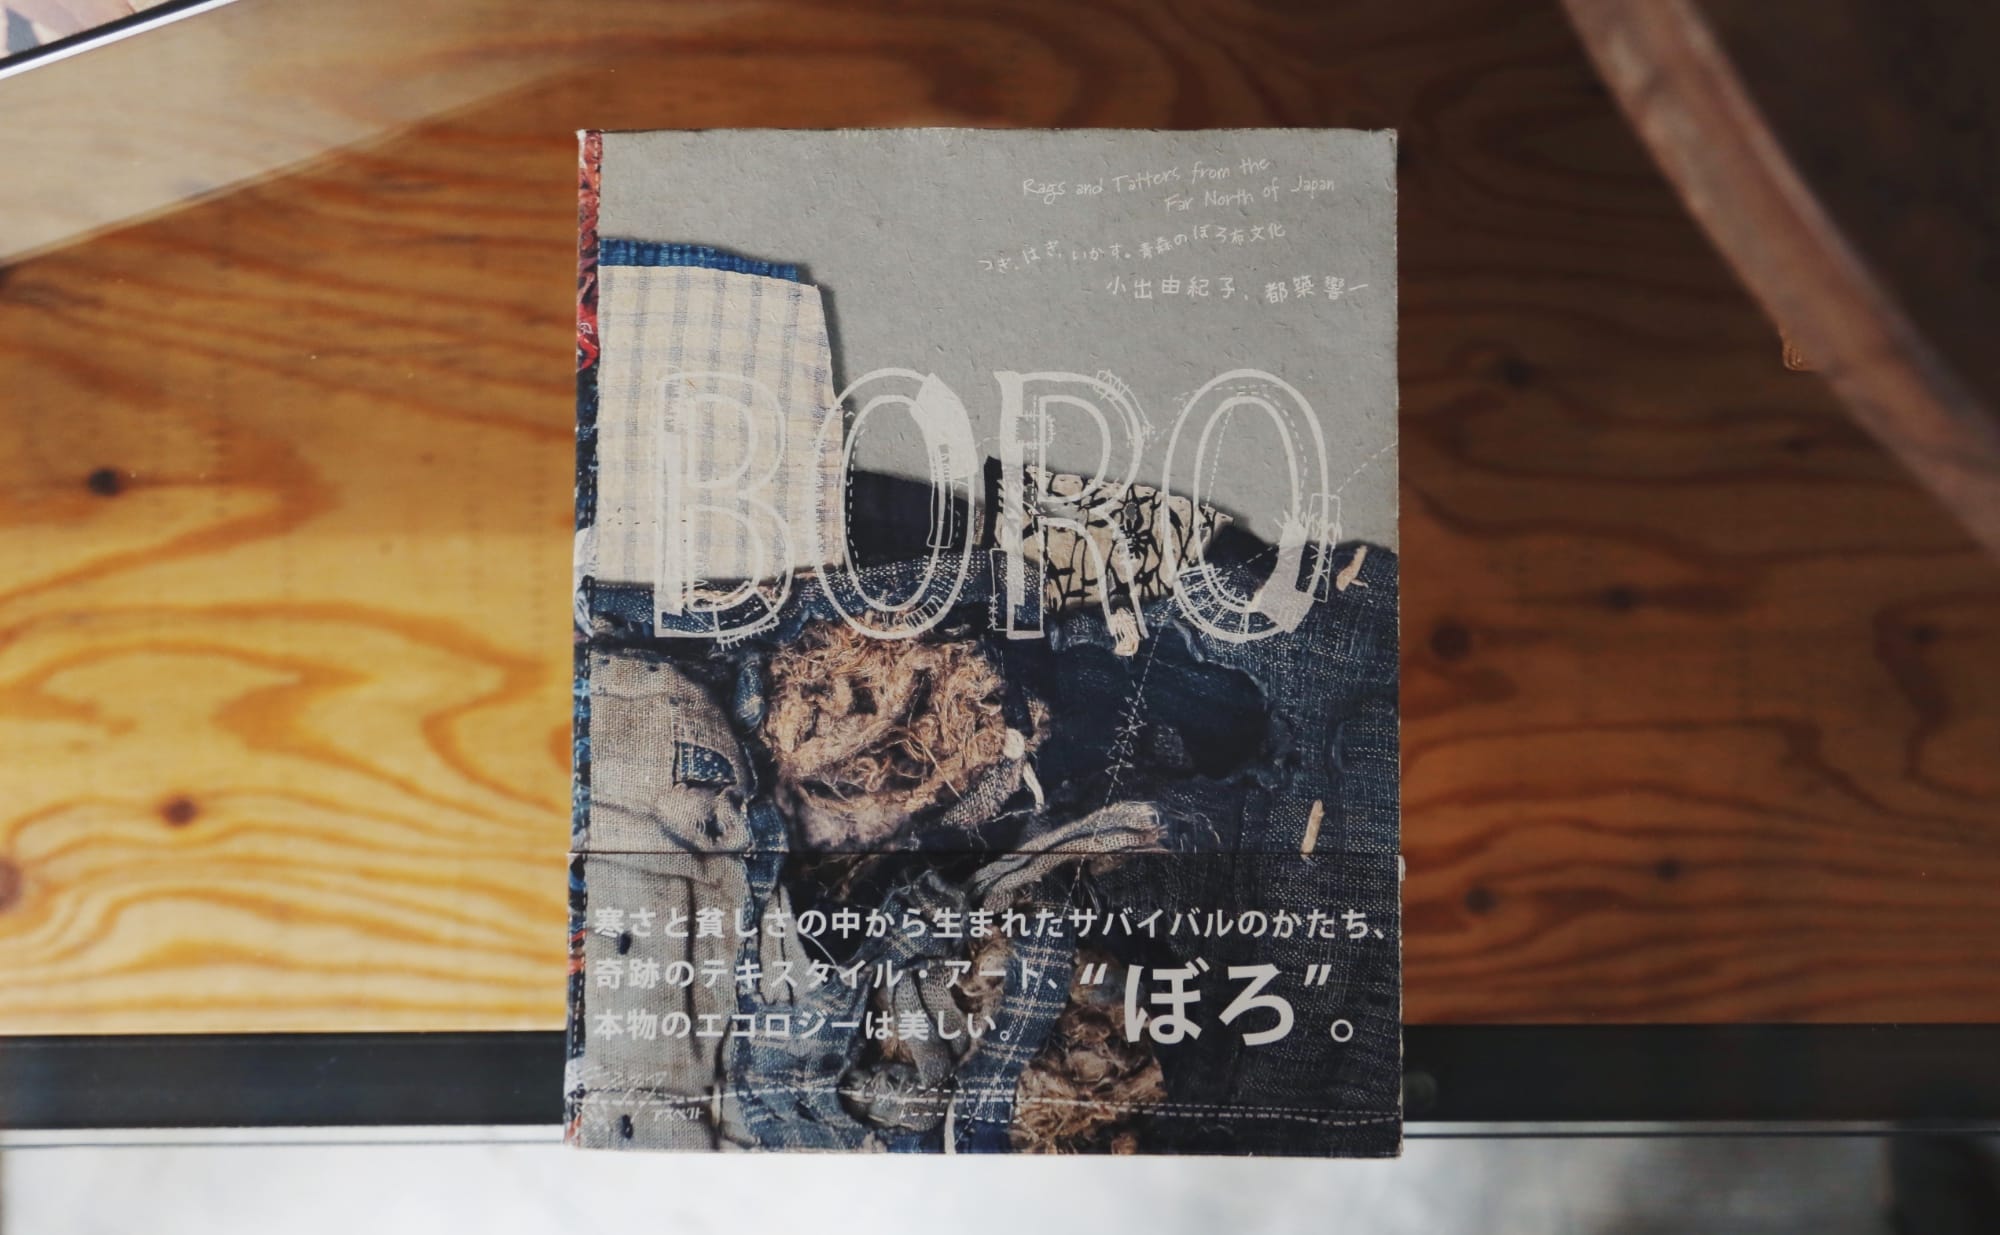 布切れ一枚、糸一本粗末にしない。「BORO」の美学。 | nostos books 